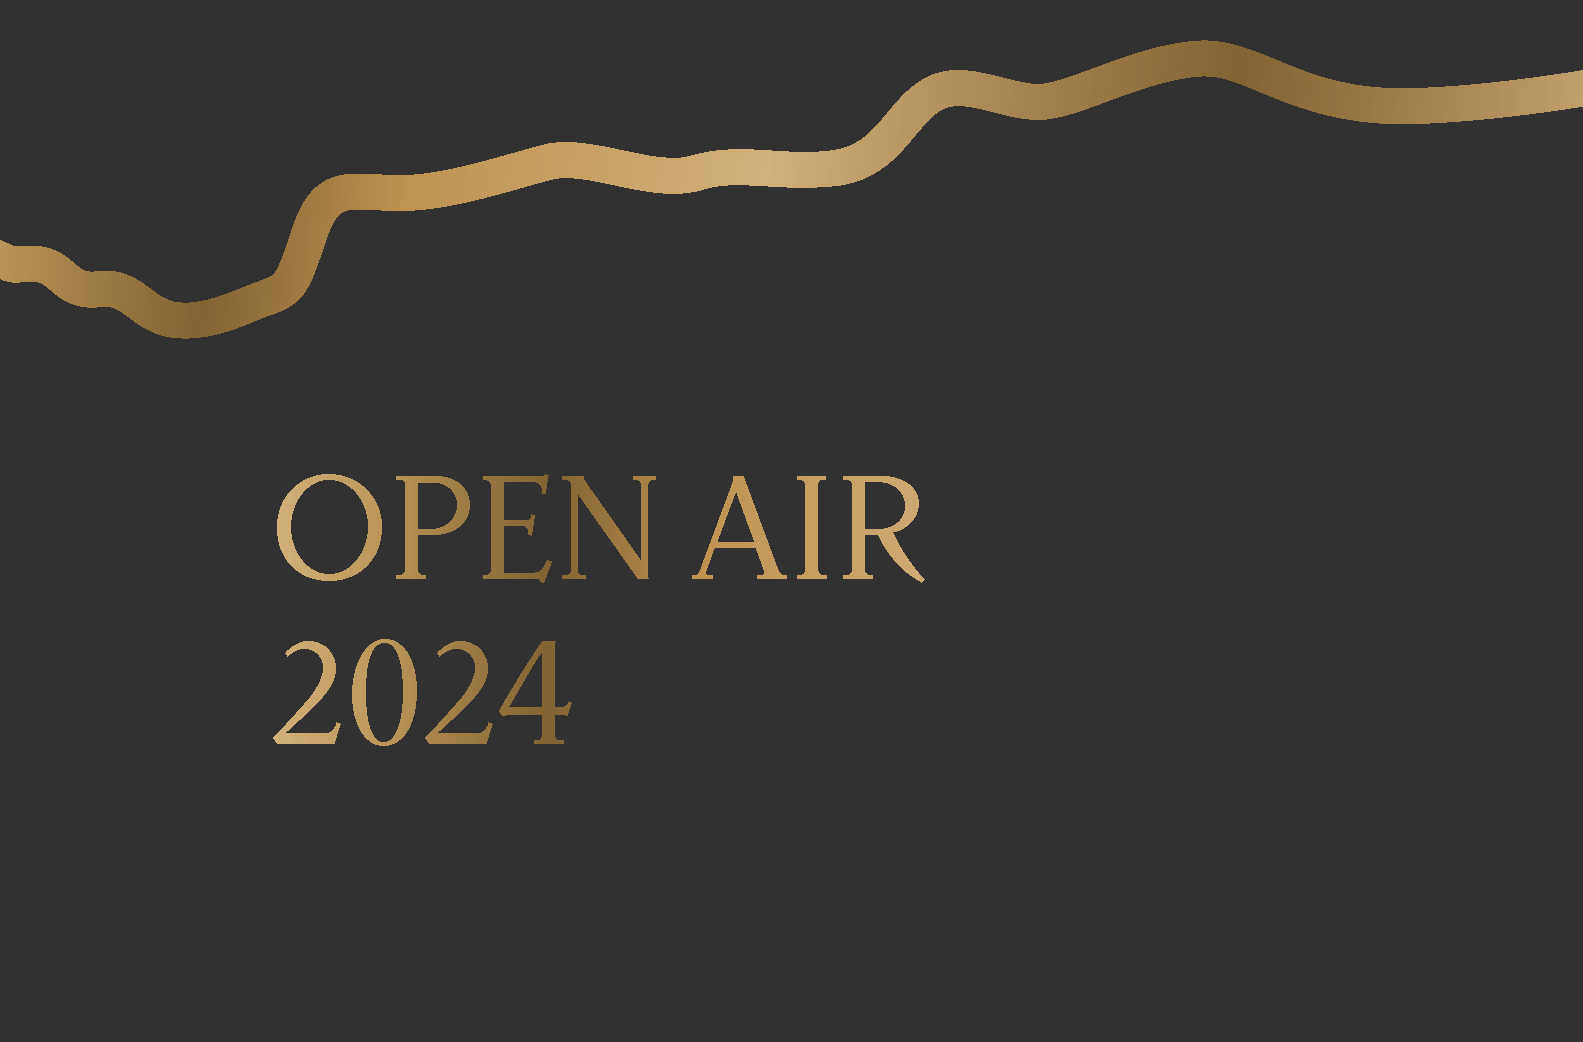 Veranstaltung_Open Air 2024